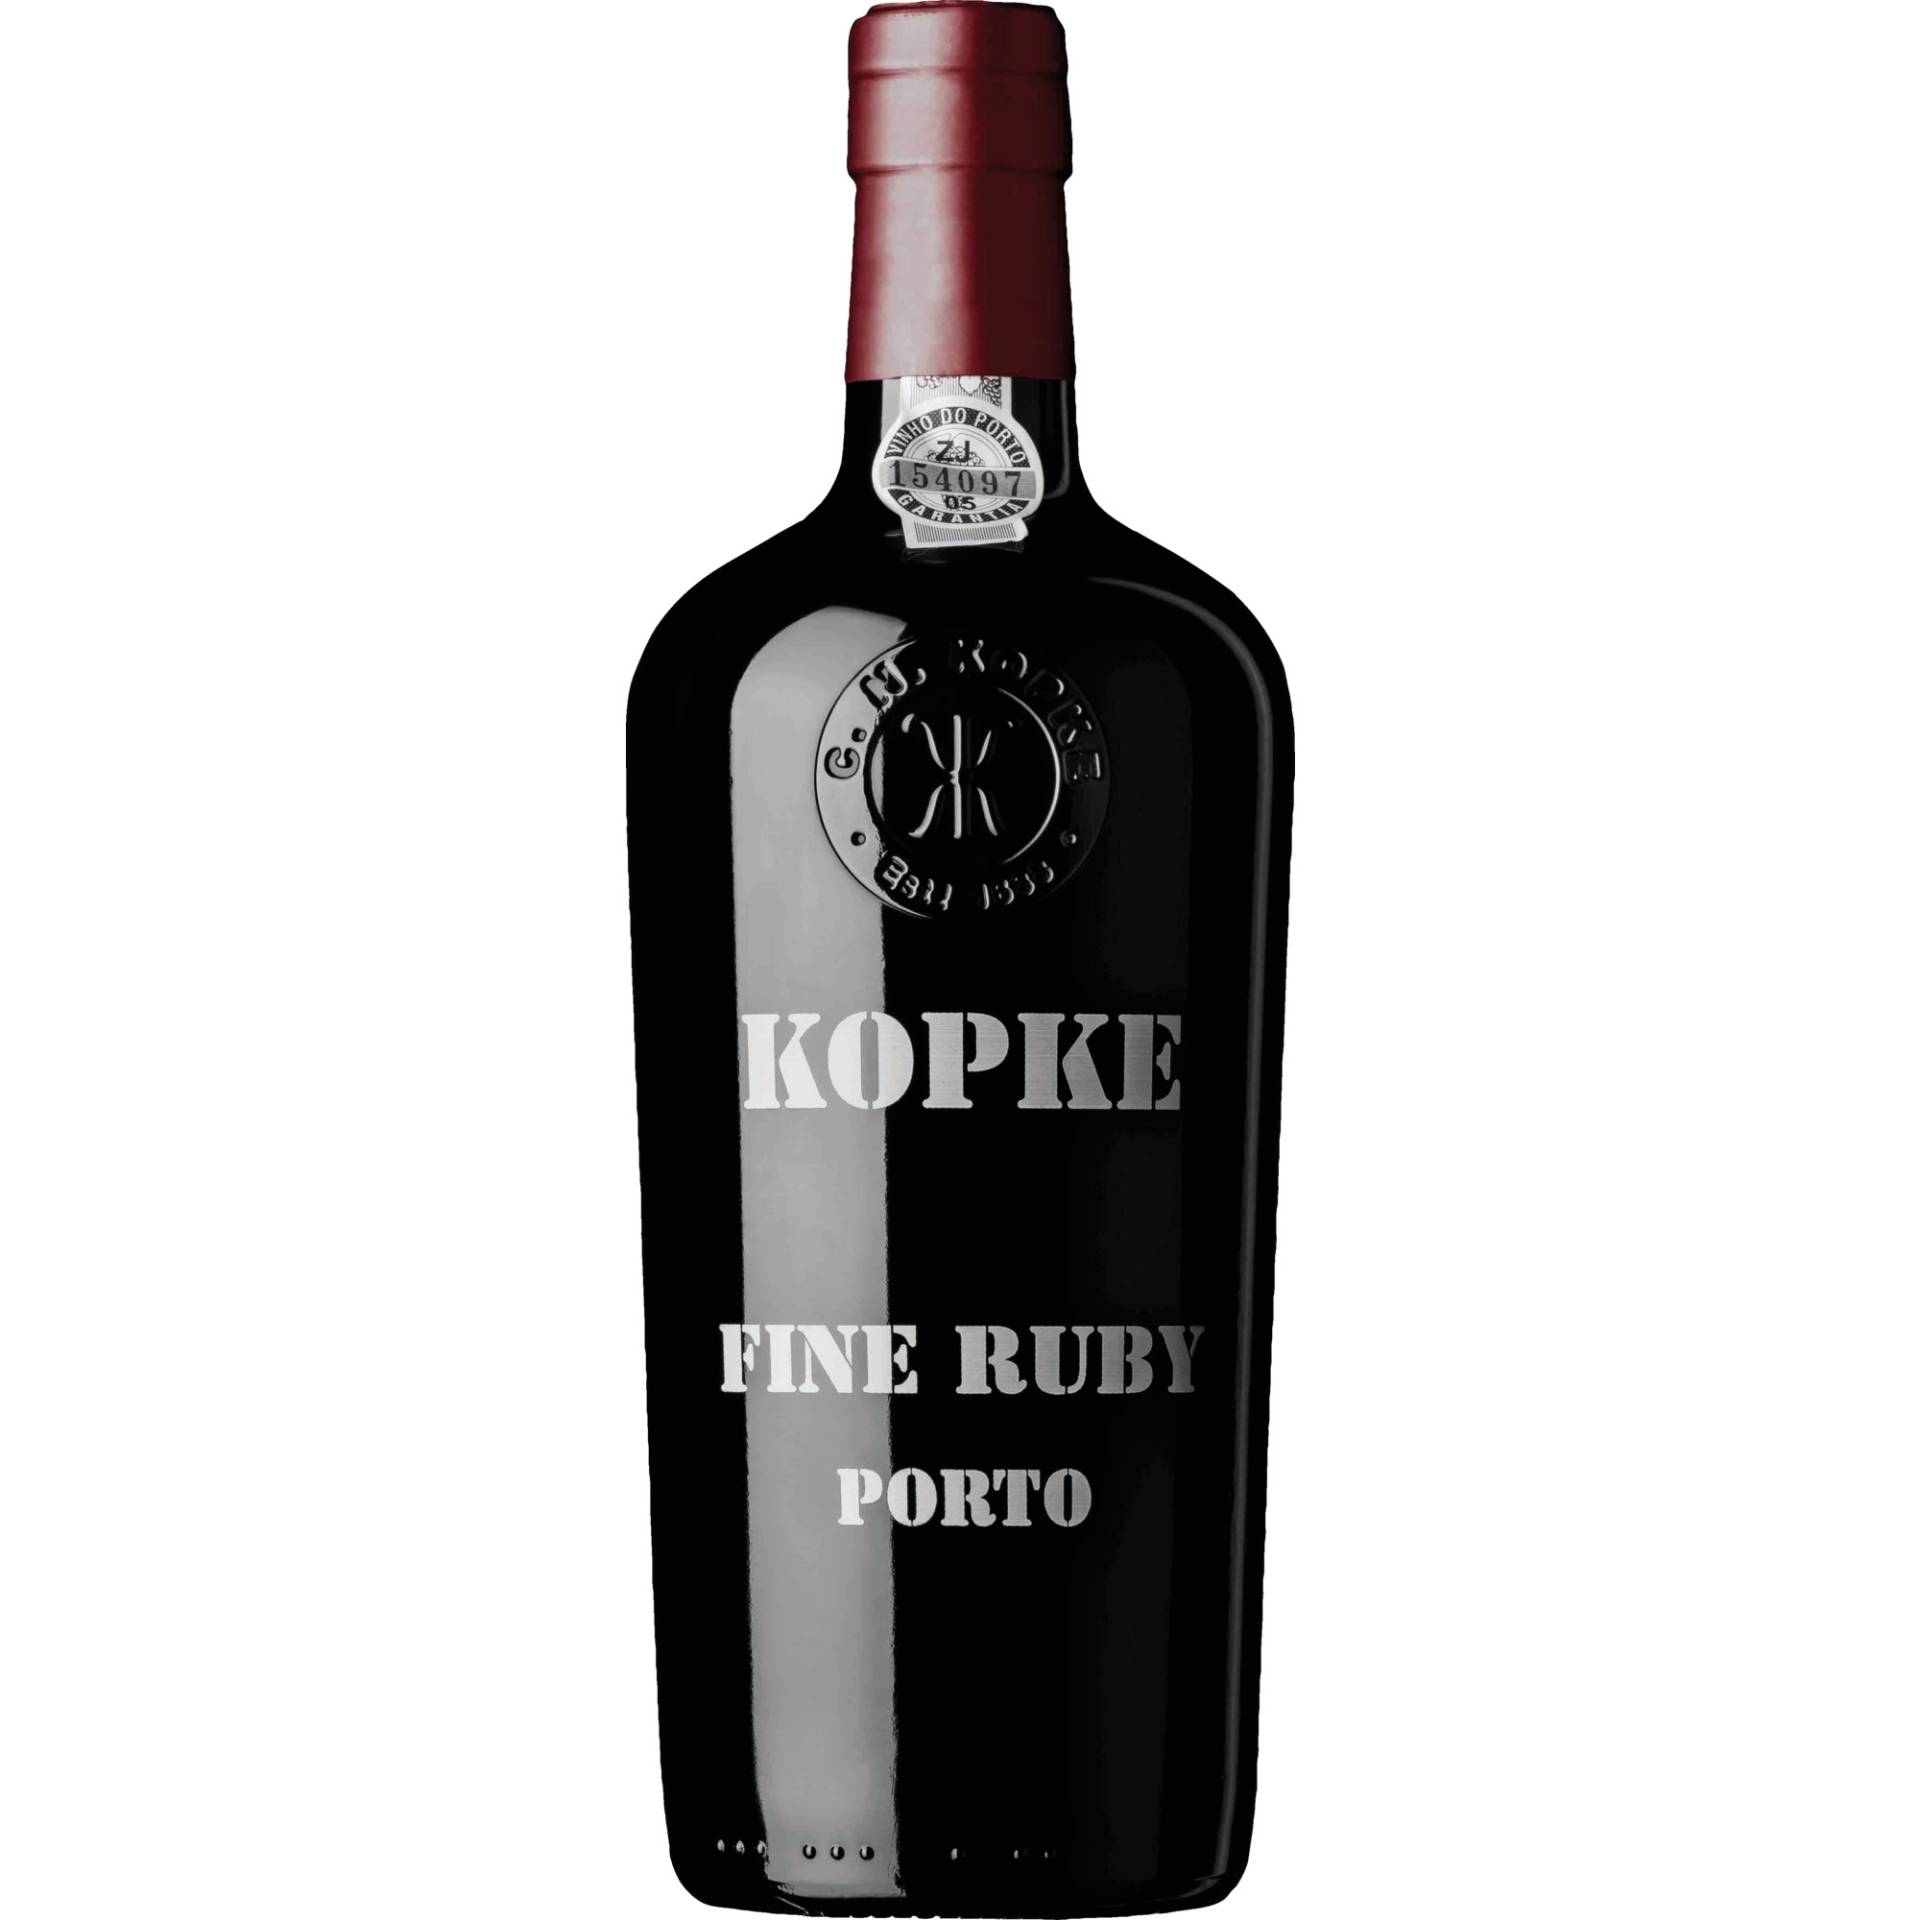 Kopke Fine Ruby Port, Vinho do Porto DOC, 0,75 L, 19,5% Vol., Douro, Spirituosen von Abgefüllt von Sogevinus Fine Wines, S.A., Vila Nova de Gaia, Portugal